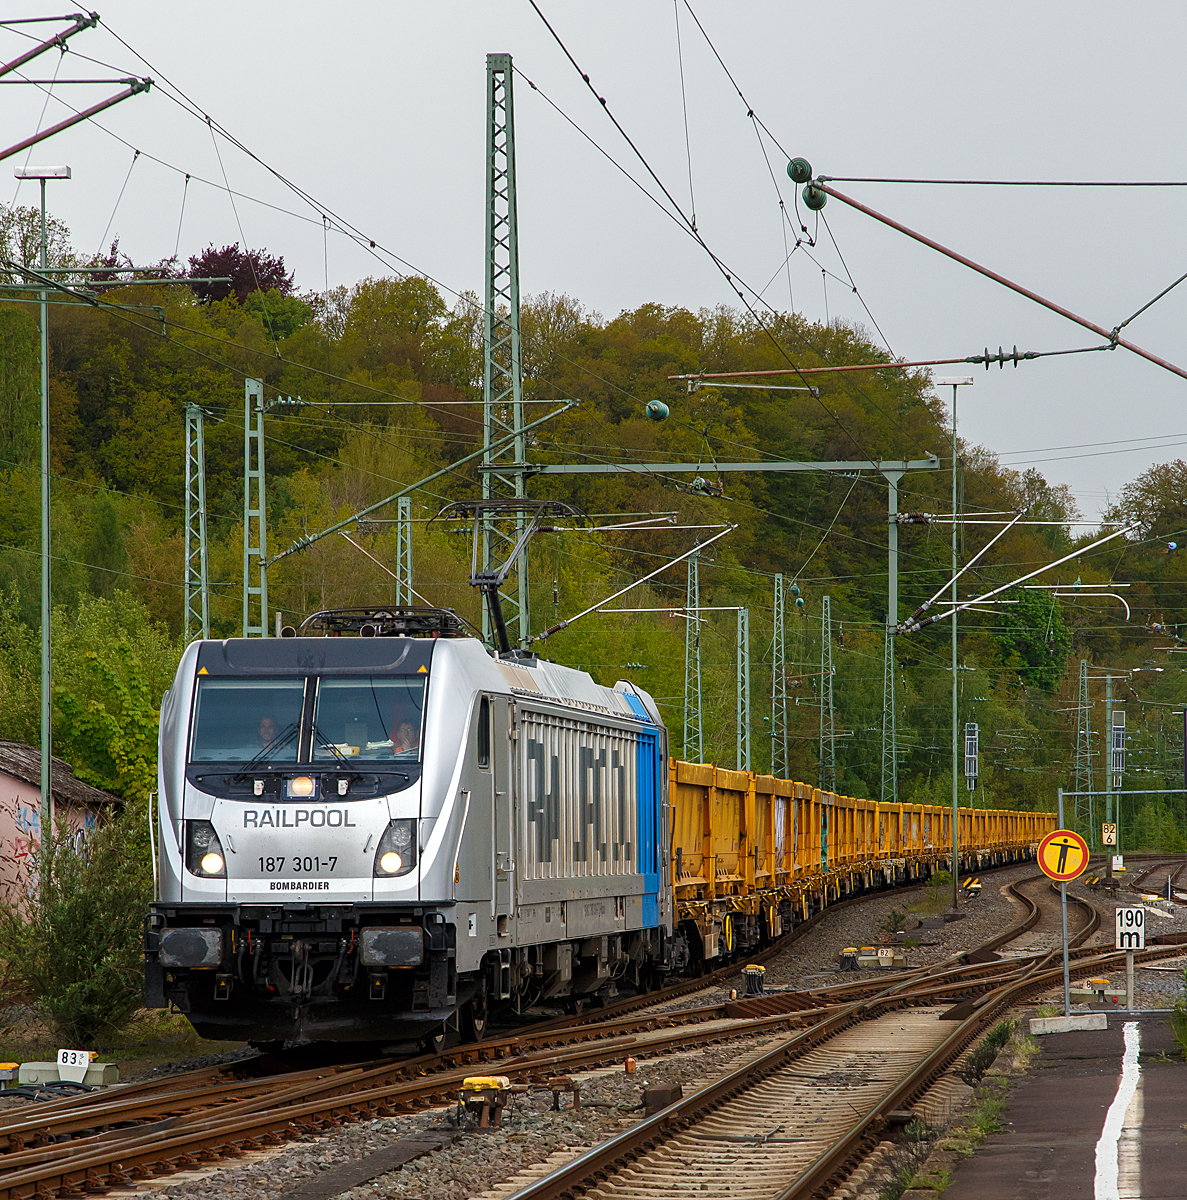 
Ein Hauch Stuttgart 21 an der Sieg....
Die Railpool 187 301-7 (91 80 6187 301-7 D-Rpool) fährt am 04.05.2019, mit einem Stuttgart 21 Aushubzug, durch Betzdorf/Sieg in Richtung Siegen. Diese Ganzzüge, mit AAEC (VTG) Containertragwagen Sgmmns 40‘ beladen mit jeweils 2 Schmitz Cargobull 20ft. Abraumcontainer für Abraum von „Stuttgart 21“, fahren für die DB AG zwischen Stuttgart (Baustelle Stuttgart 21) und Nordhausen.

Die TRAXX F160 AC3 LM wurde 2016 von Bombardier unter der Fabriknummer 35230 gebaut.
